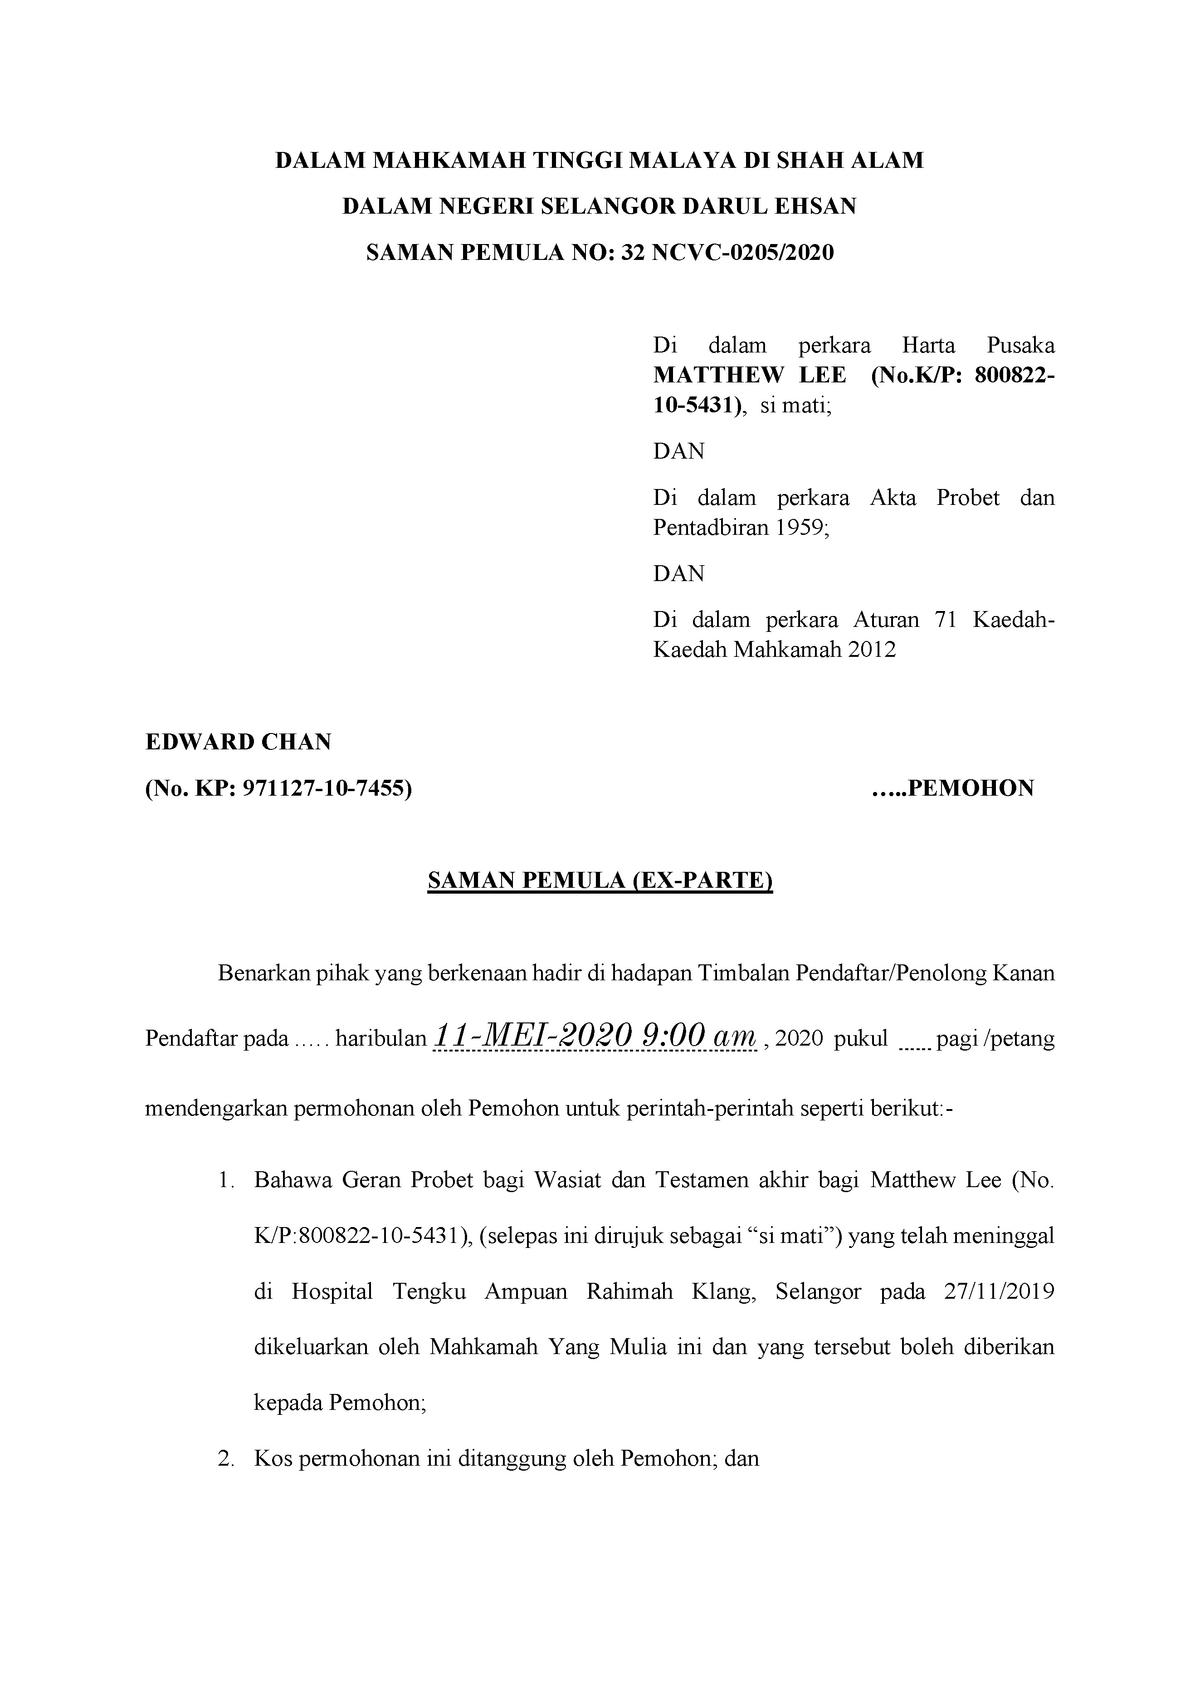 Saman Pemula Probate Dalam Mahkamah Tinggi Malaya Di Shah Alam Dalam Negeri Selangor Darul Ehsan Saman Pemula No 32 Ncvc 0205 Di Dalam Perkara Harta Pusaka Studocu